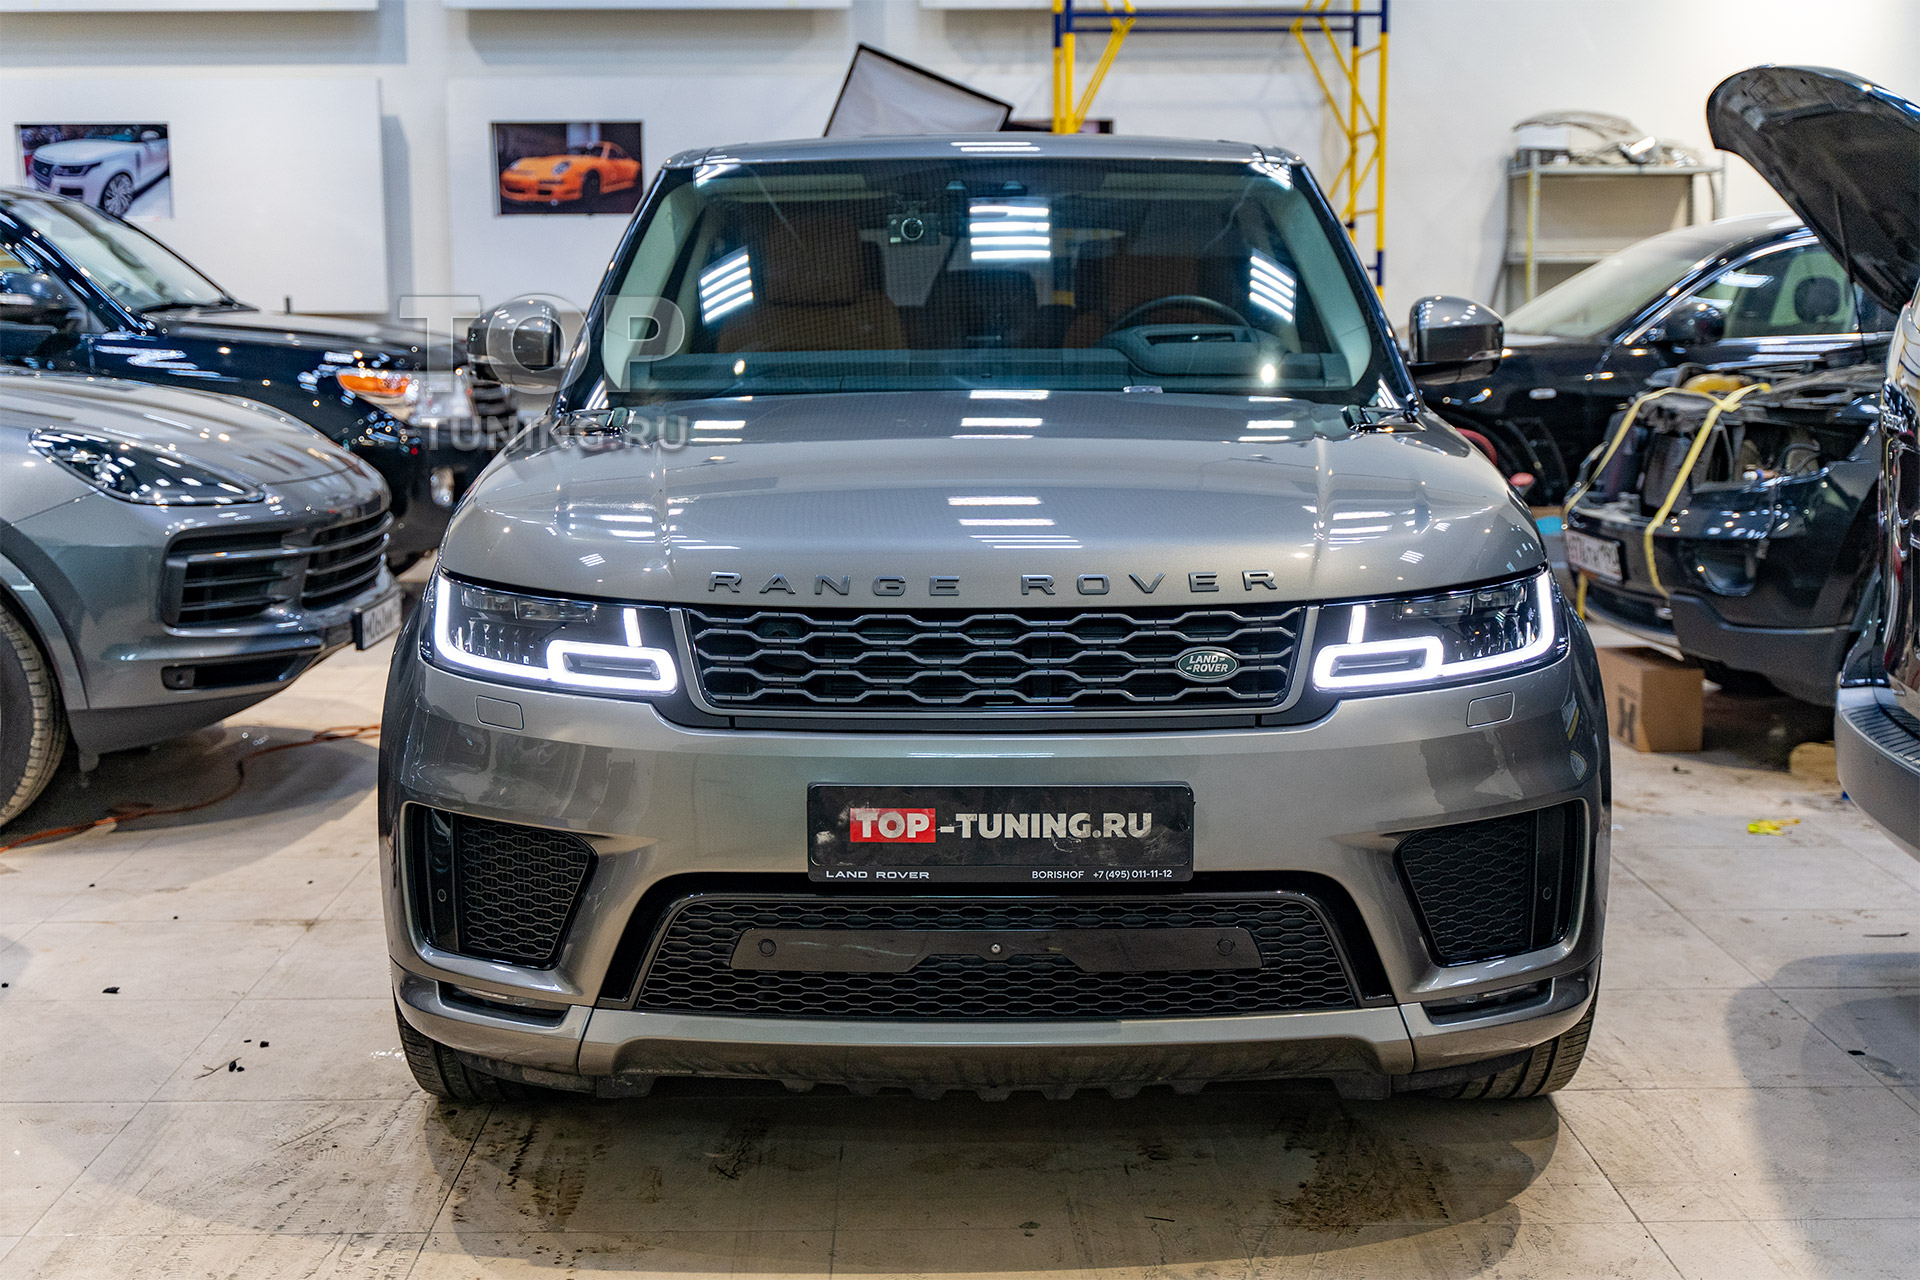 Новое поколение доводчиков для Range Rover – пример установки